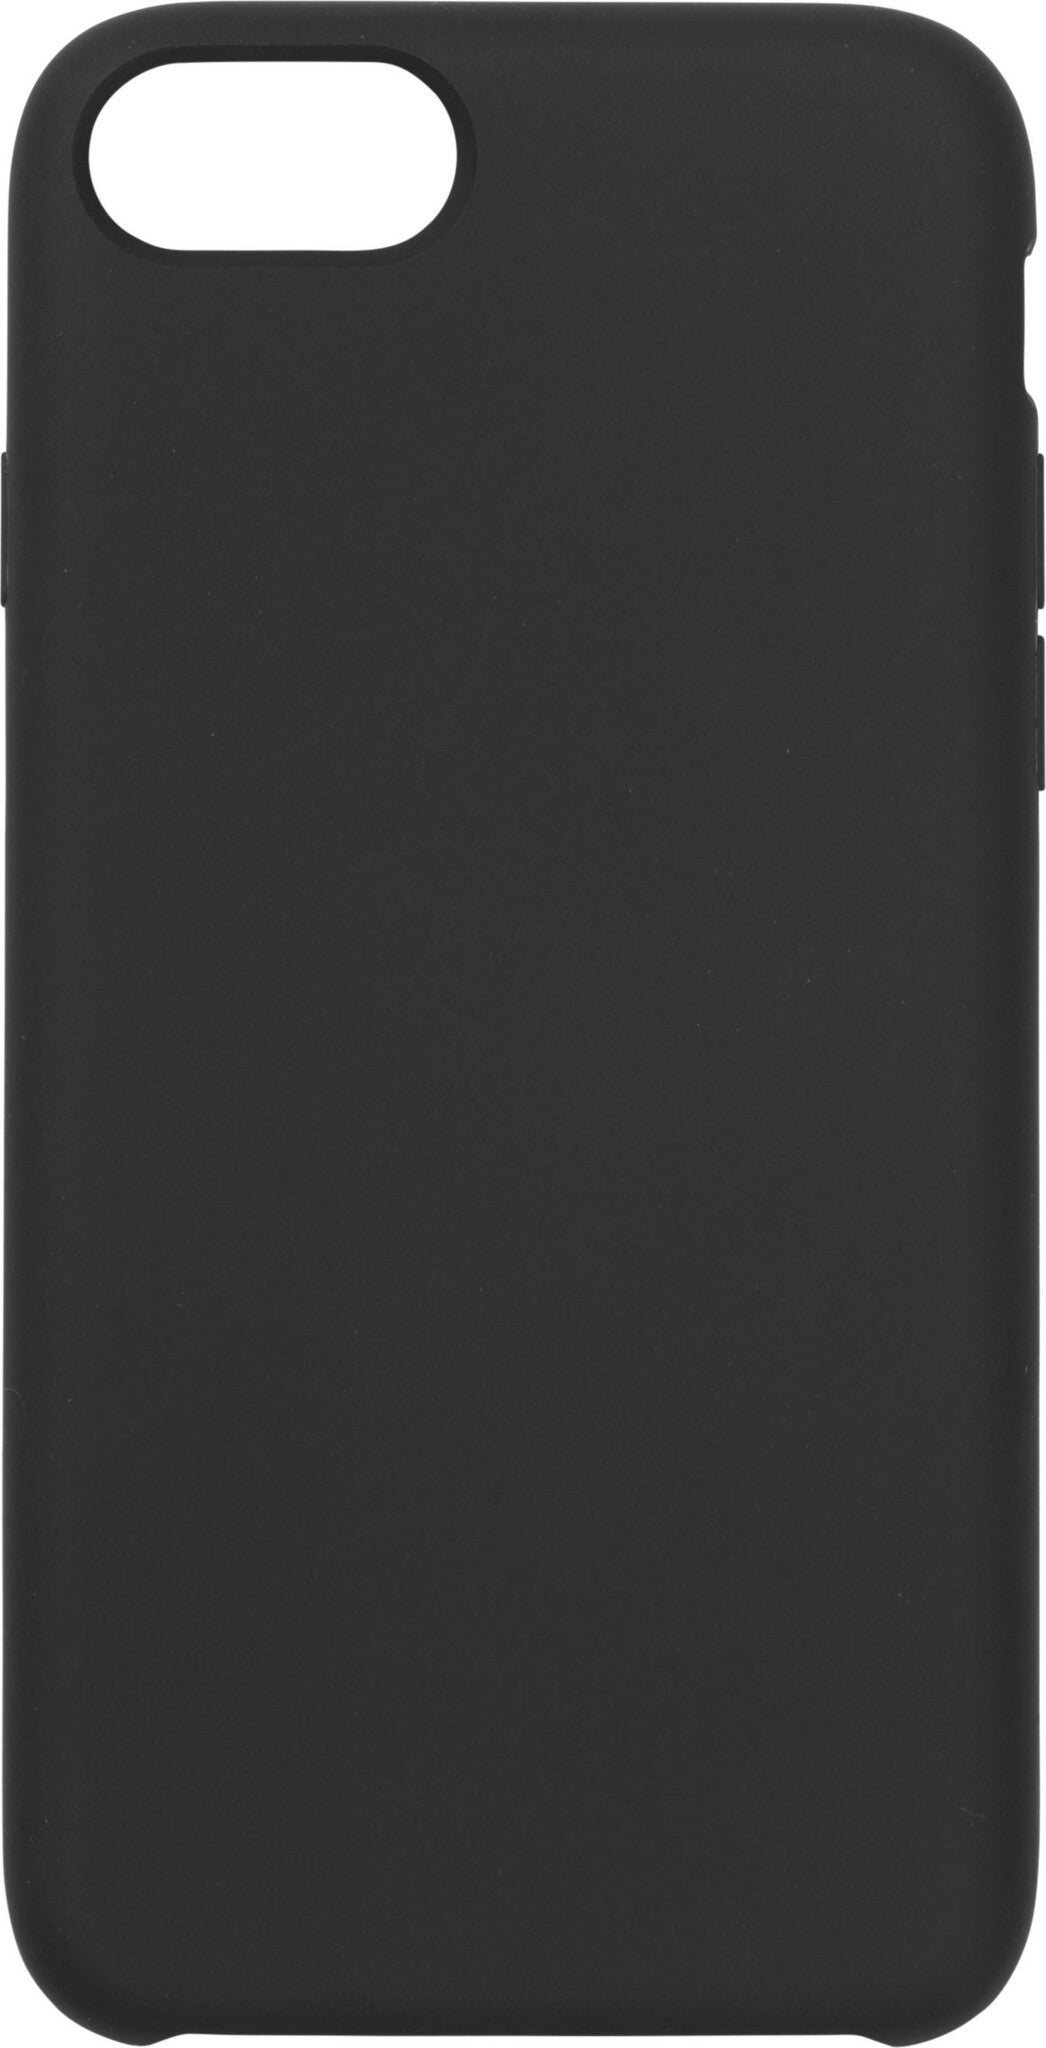 eSTUFF INFINITE RIGA mobile phone case for iPhone SE (22/20) / 8 / 7 in Black